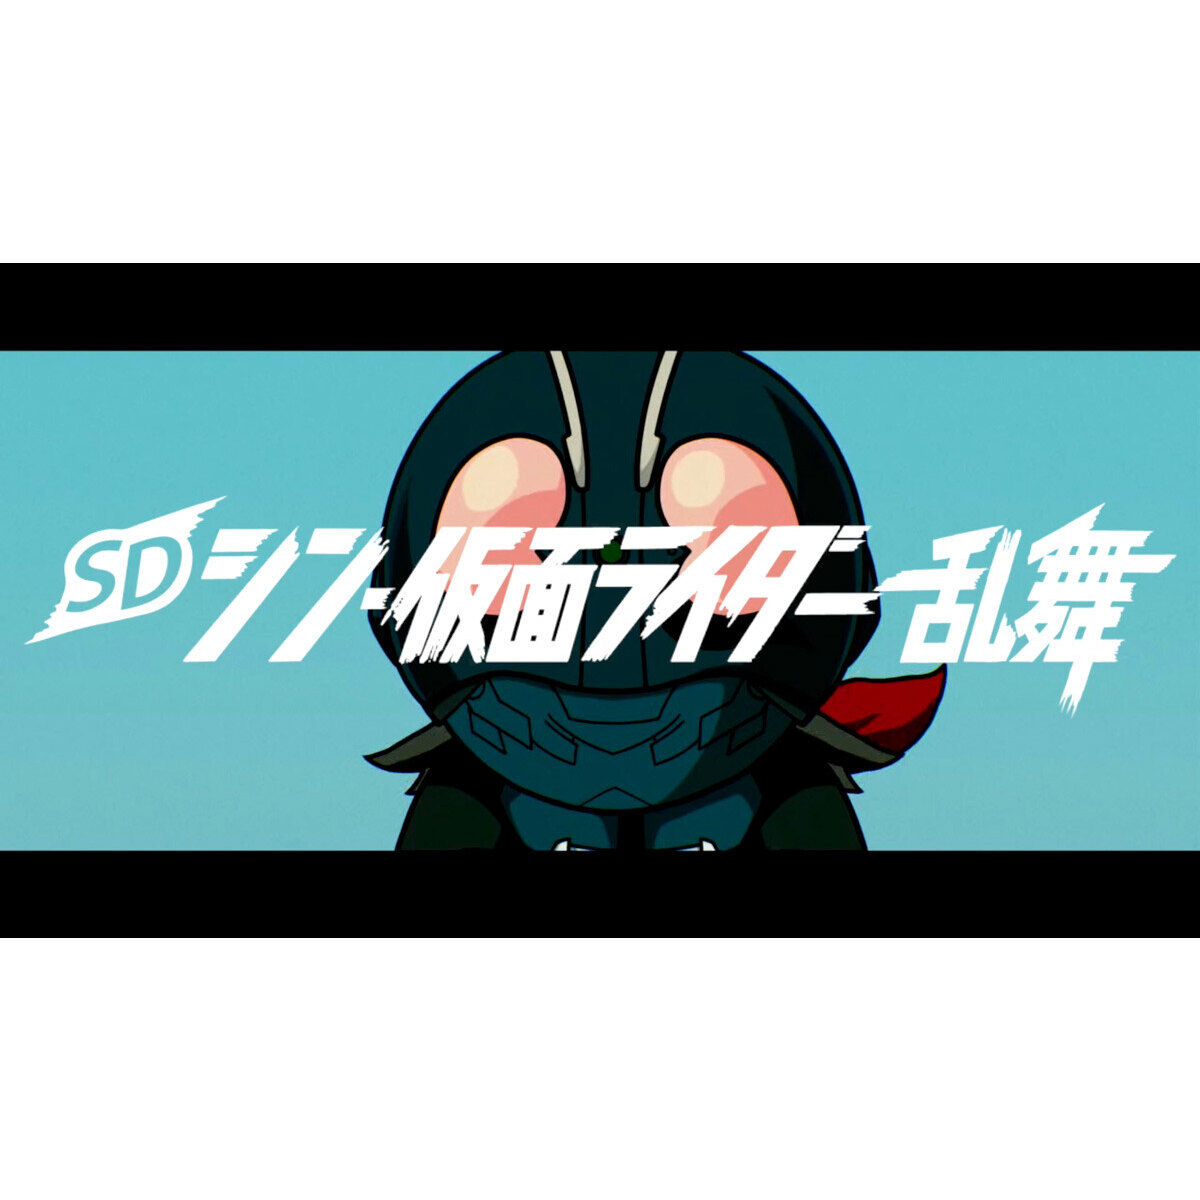 Nintendo Switch(TM) 〈アソビストア特装版〉 SDシン・仮面ライダー 